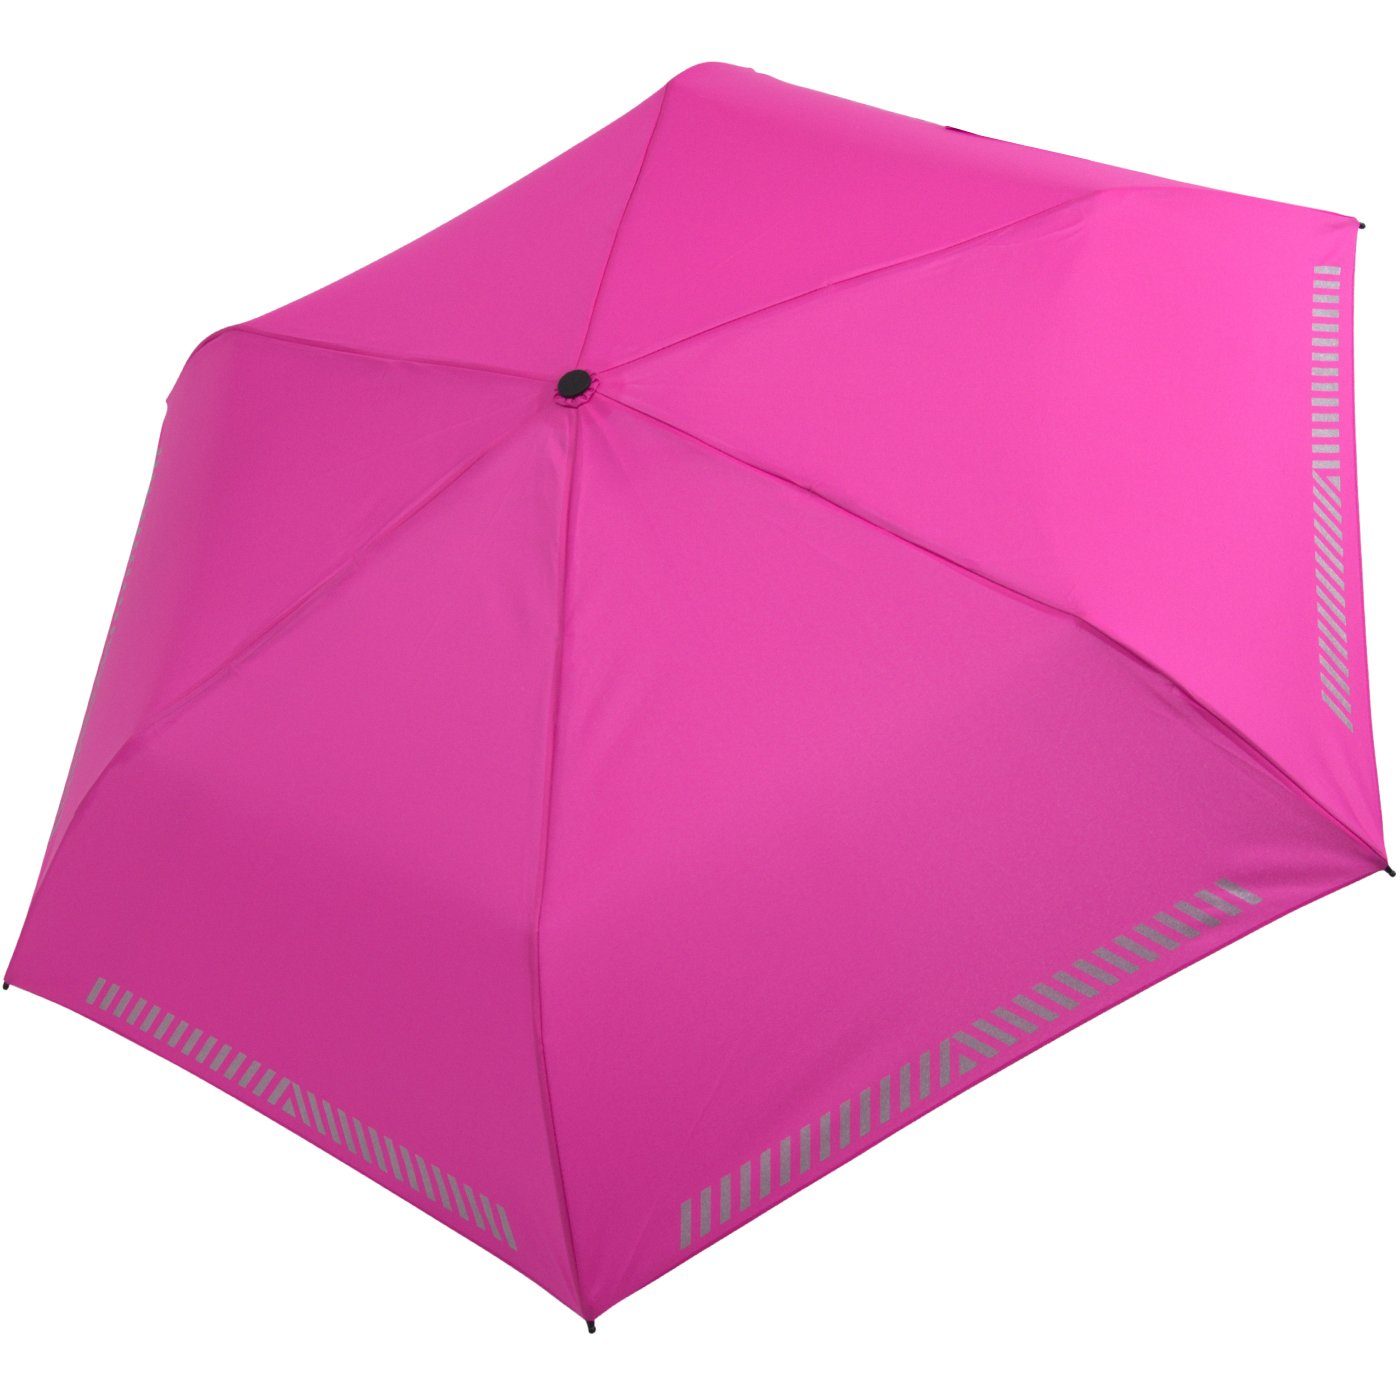 Reflex-Streifen pink reflektierend, neon Sicherheit Taschenregenschirm - Auf-Zu-Automatik, durch Kinderschirm iX-brella mit